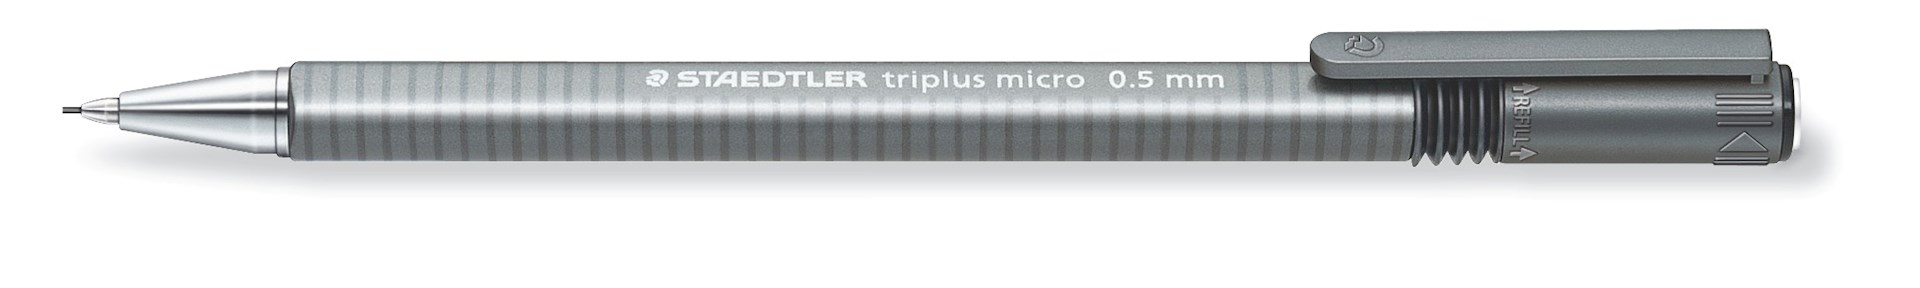 Ołówek automatyczny triplus micro, 0,5 mm, Staedtler